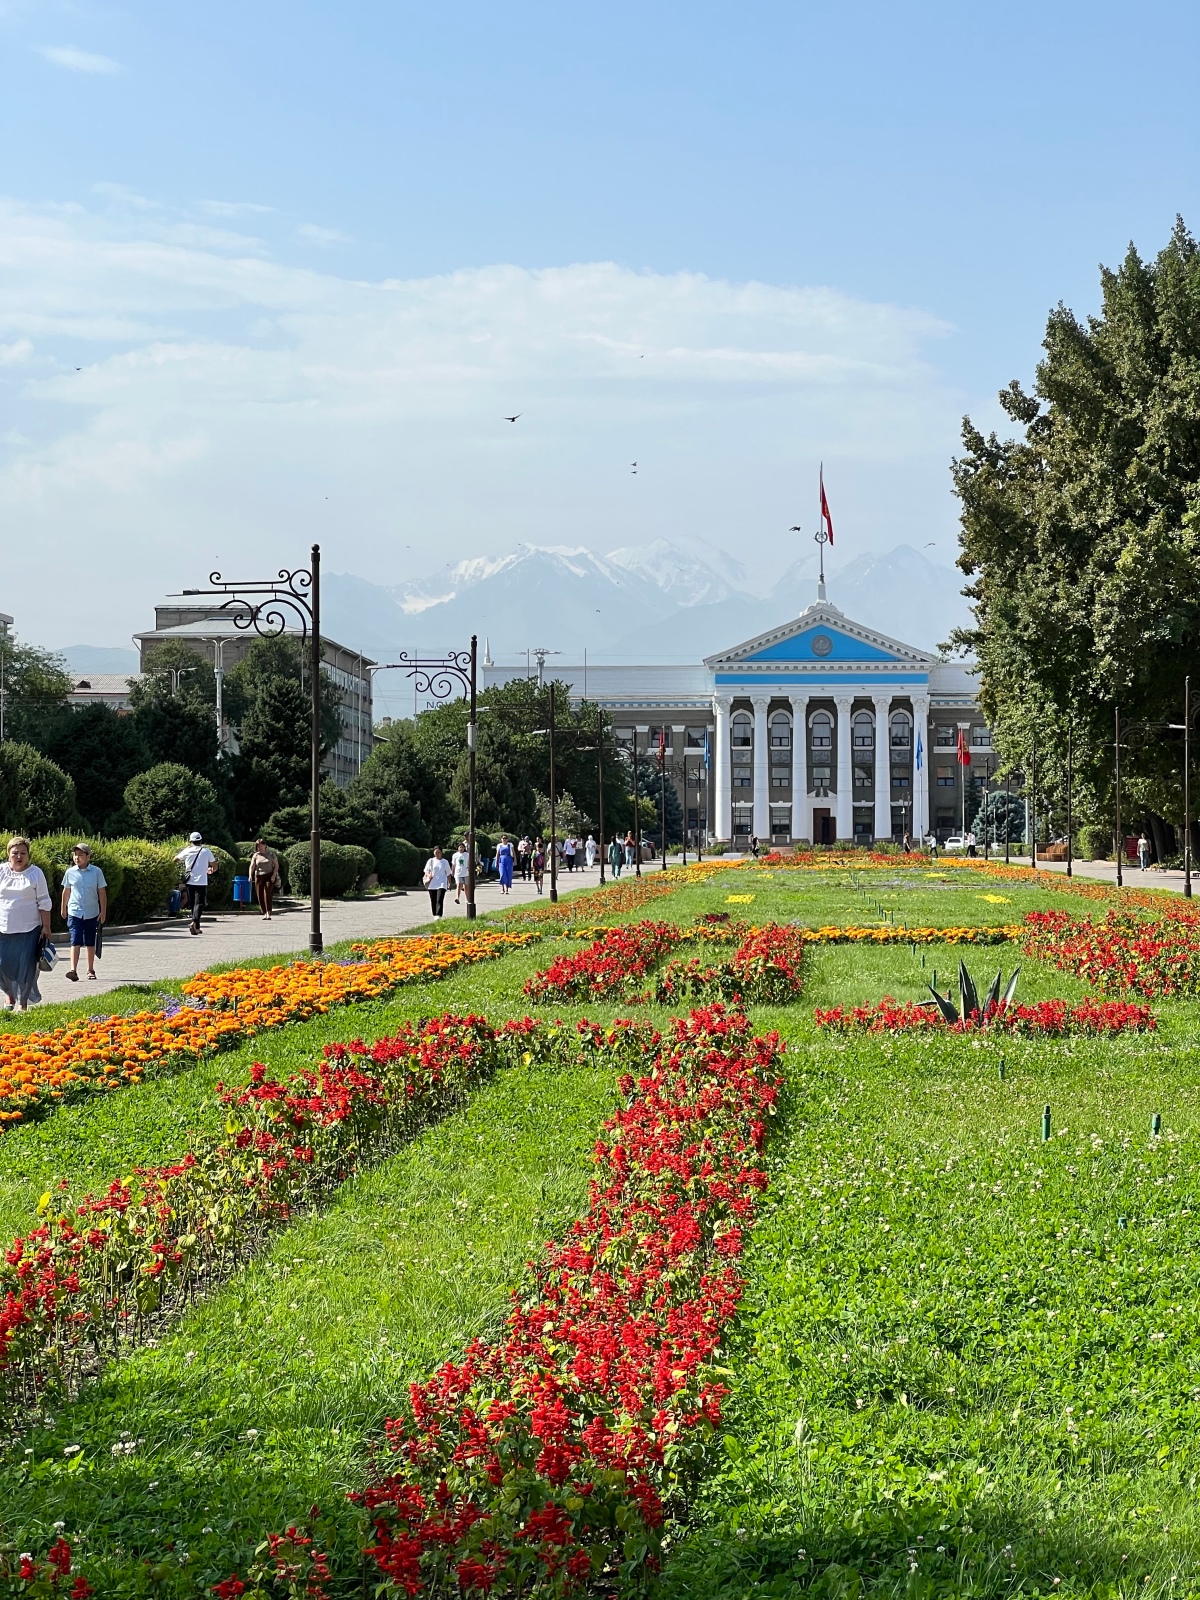 Anreise und Bishkek